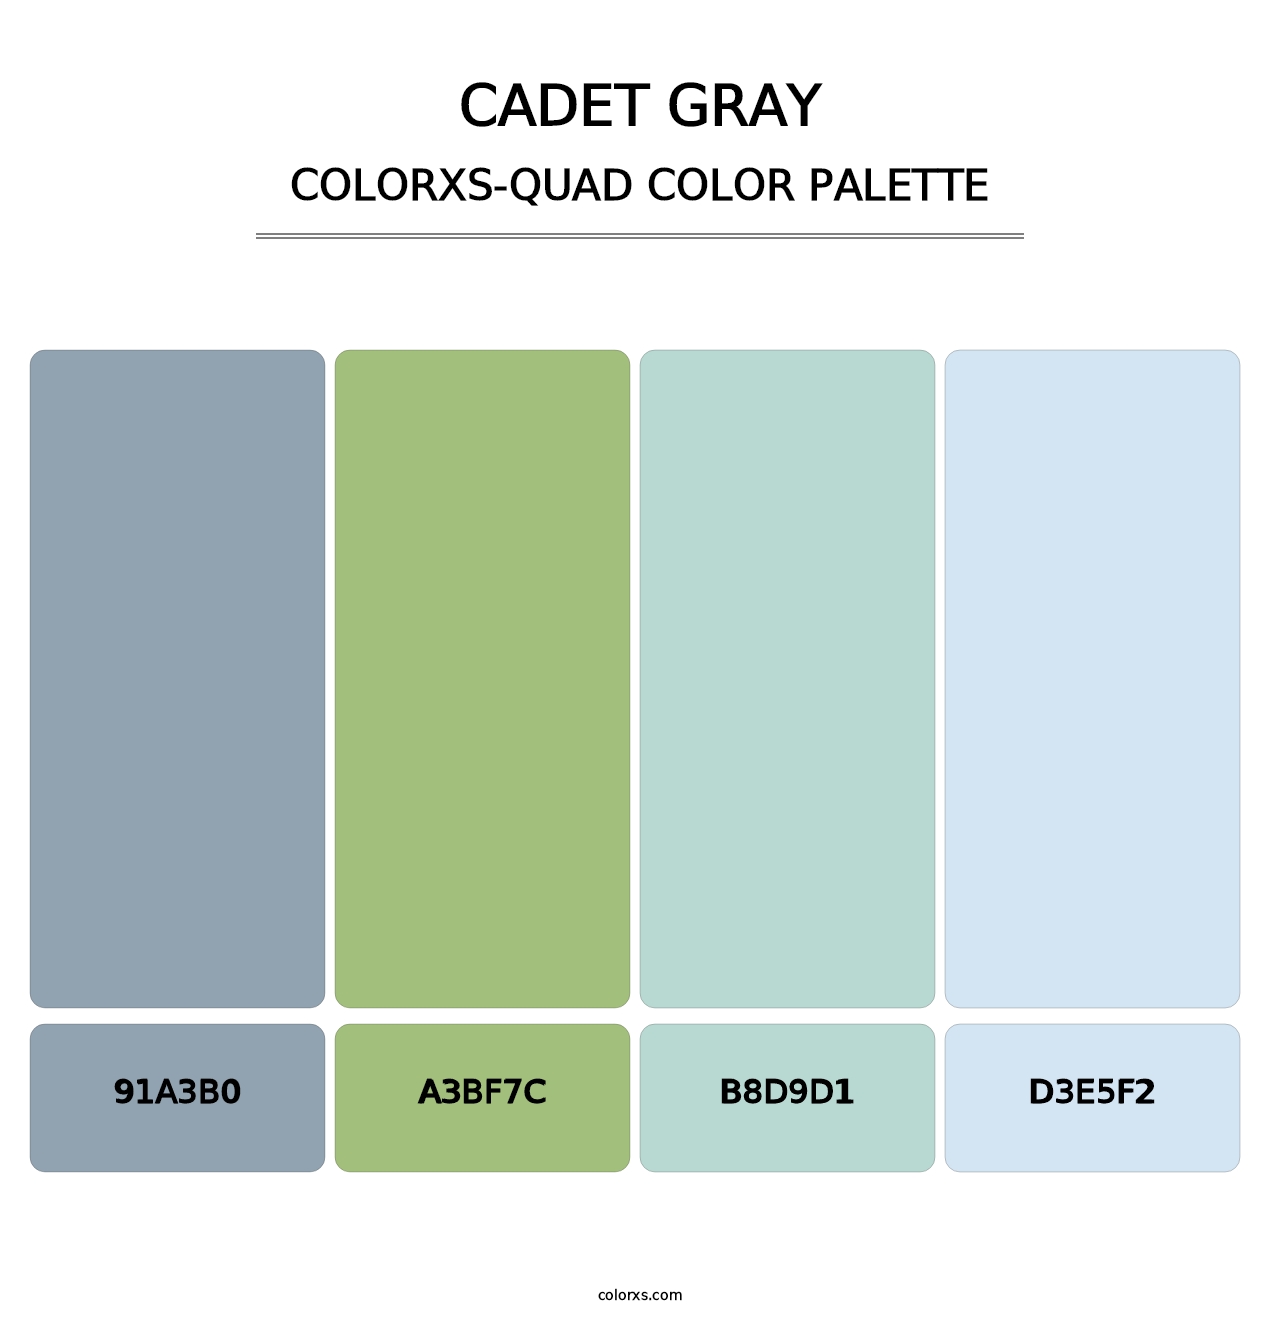 Cadet Gray - Colorxs Quad Palette